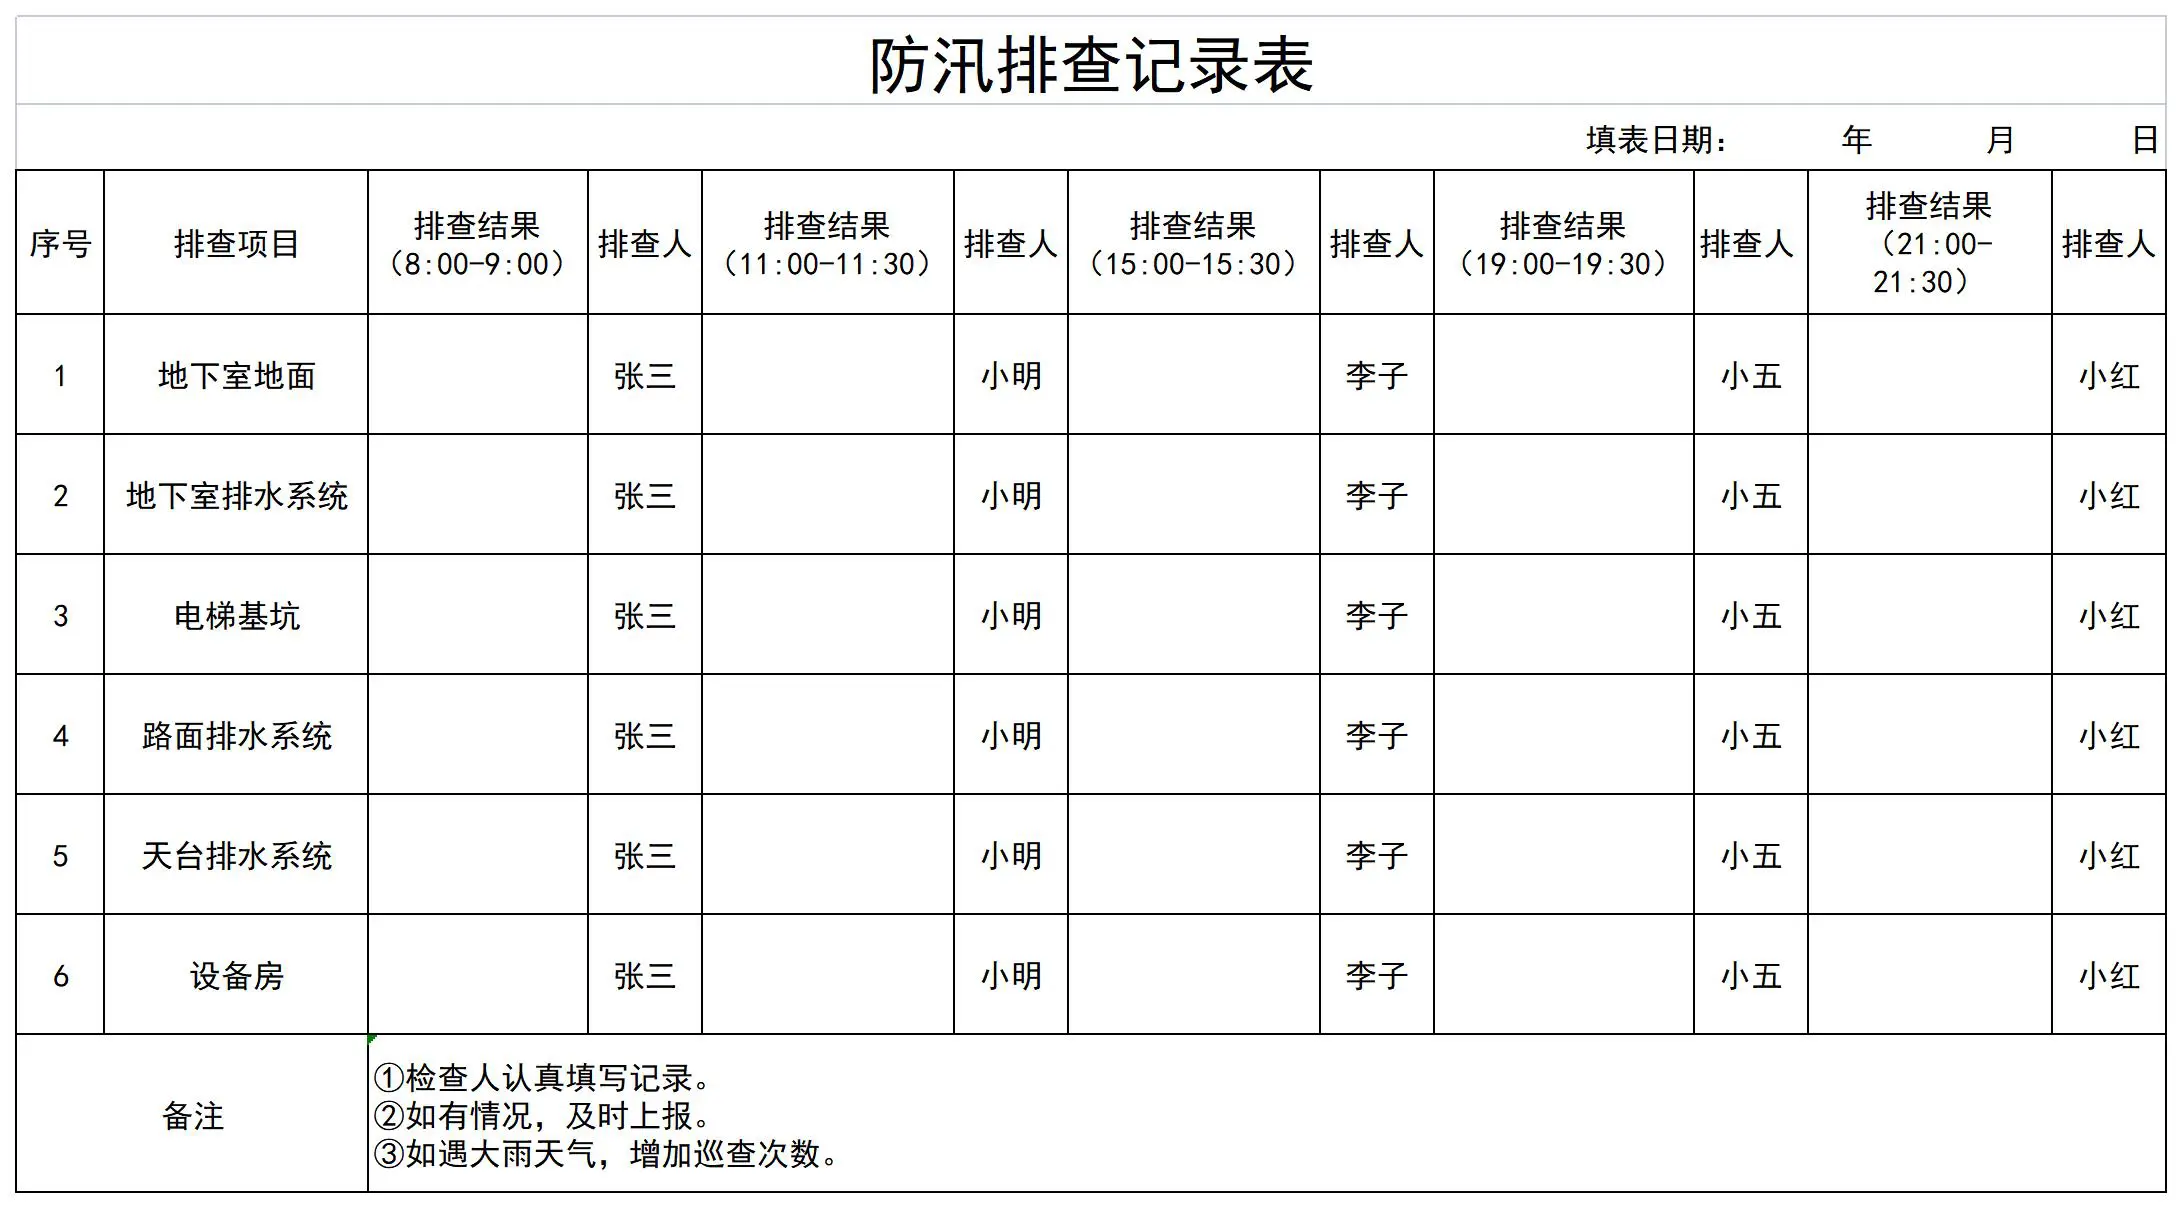 内部员工满意度调查表表格模板下载-华军软件园